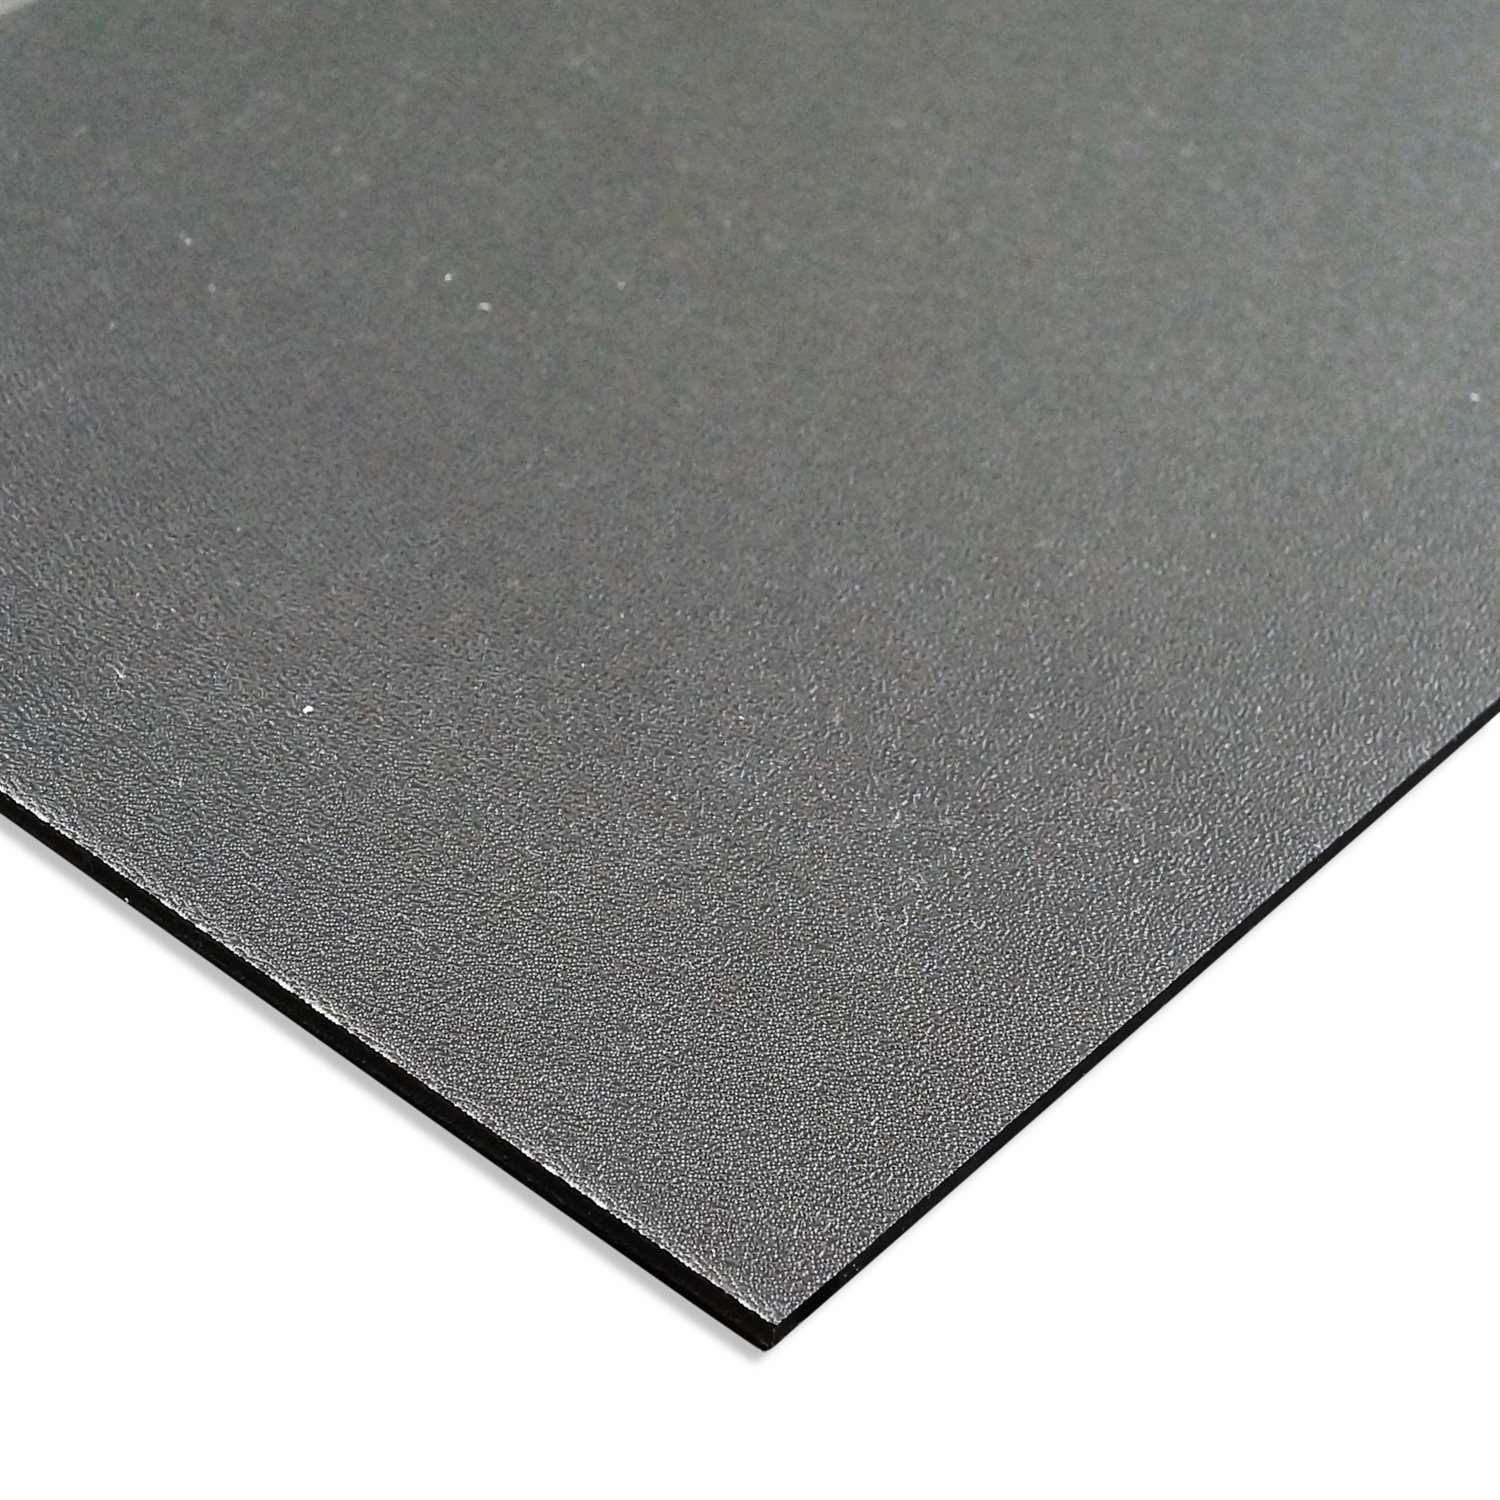 A Qualität ABS Kunststoff Platte 220x220mm Farbe Schwarz in Stärken 1-2 mm 